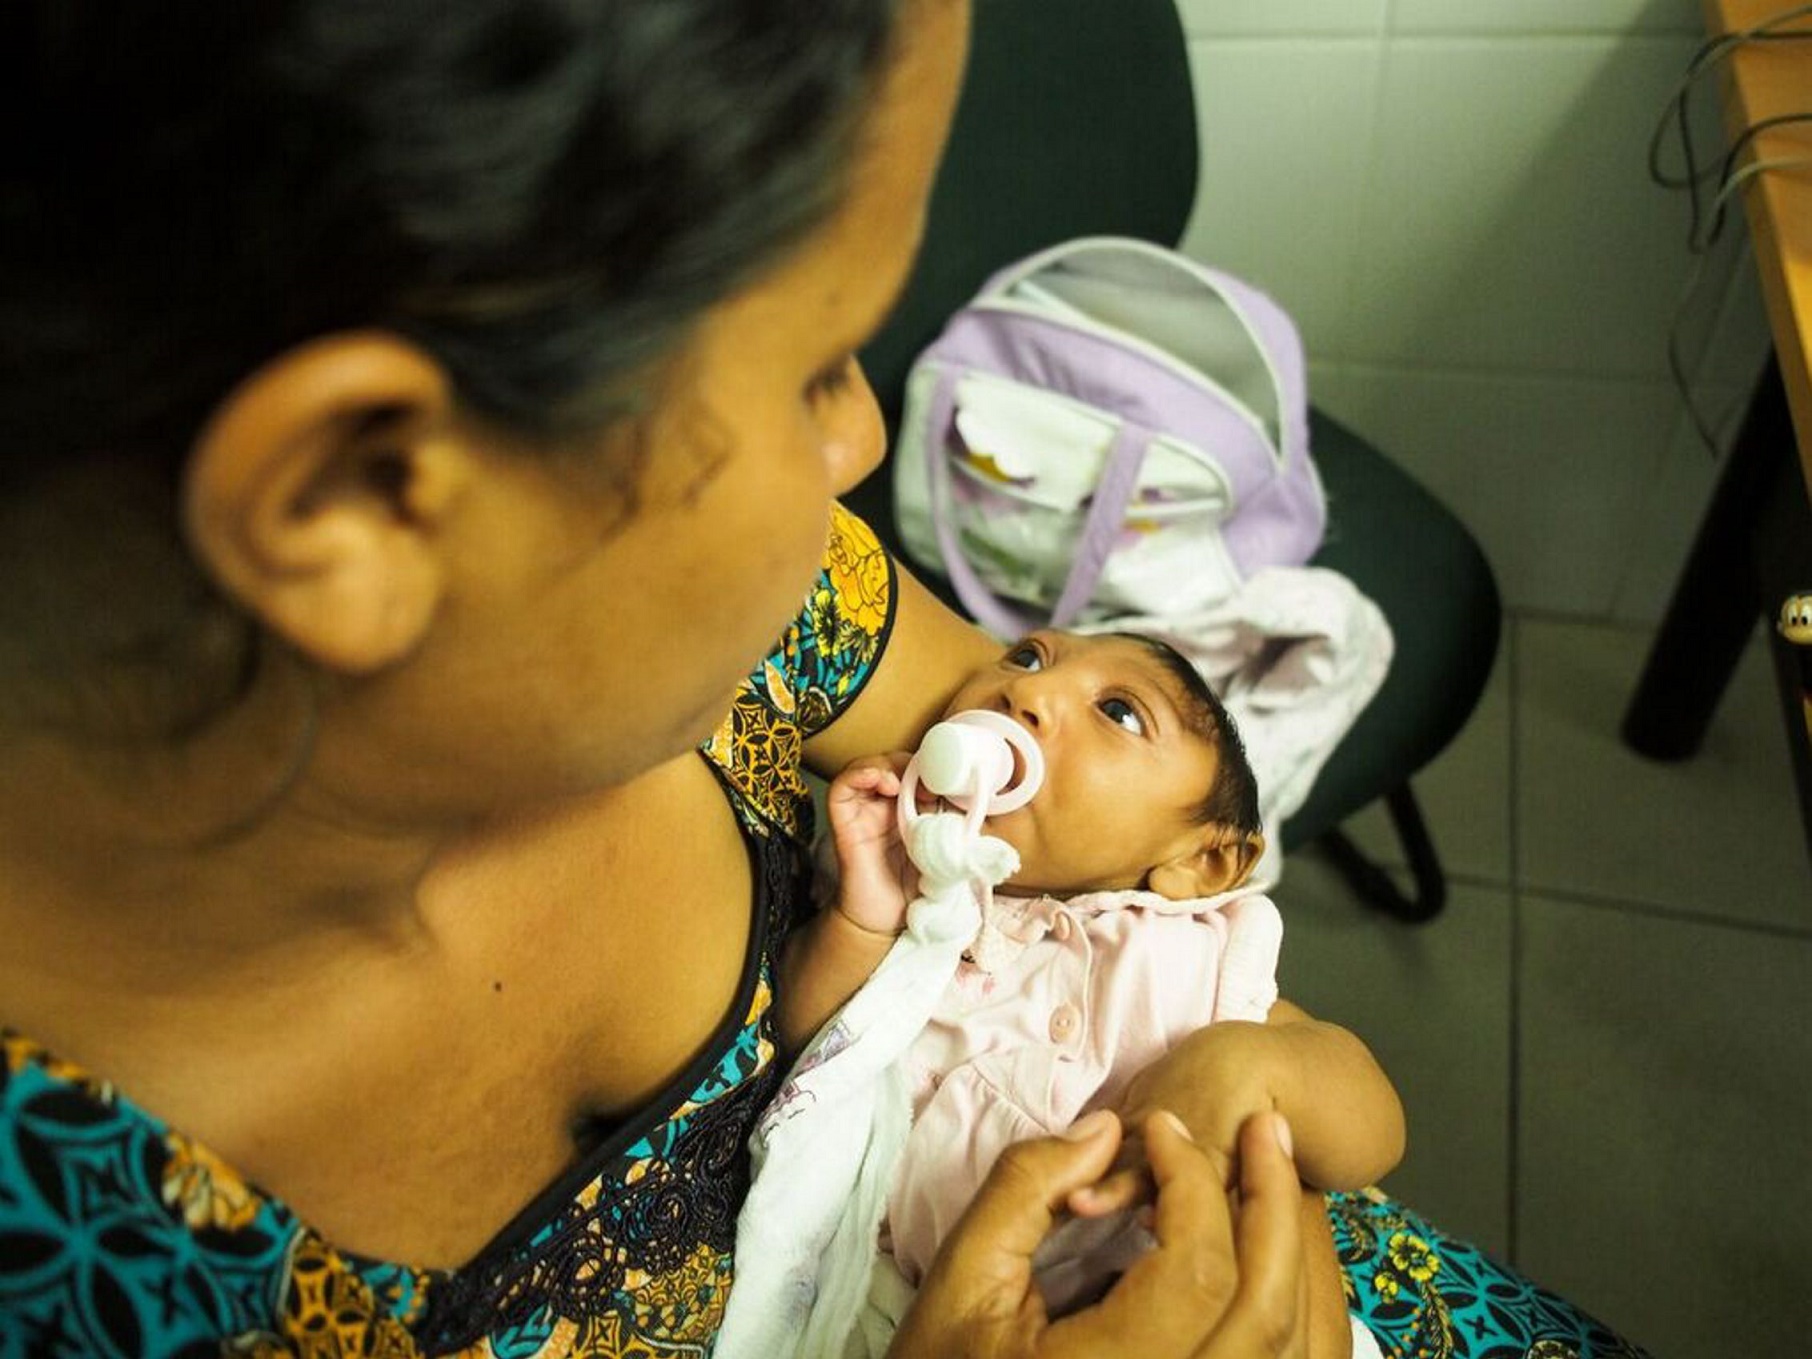 Um número que chama a atenção é que 55% das crianças que nasceram com microcefalia são meninas. Foto de Heriberto Araújo